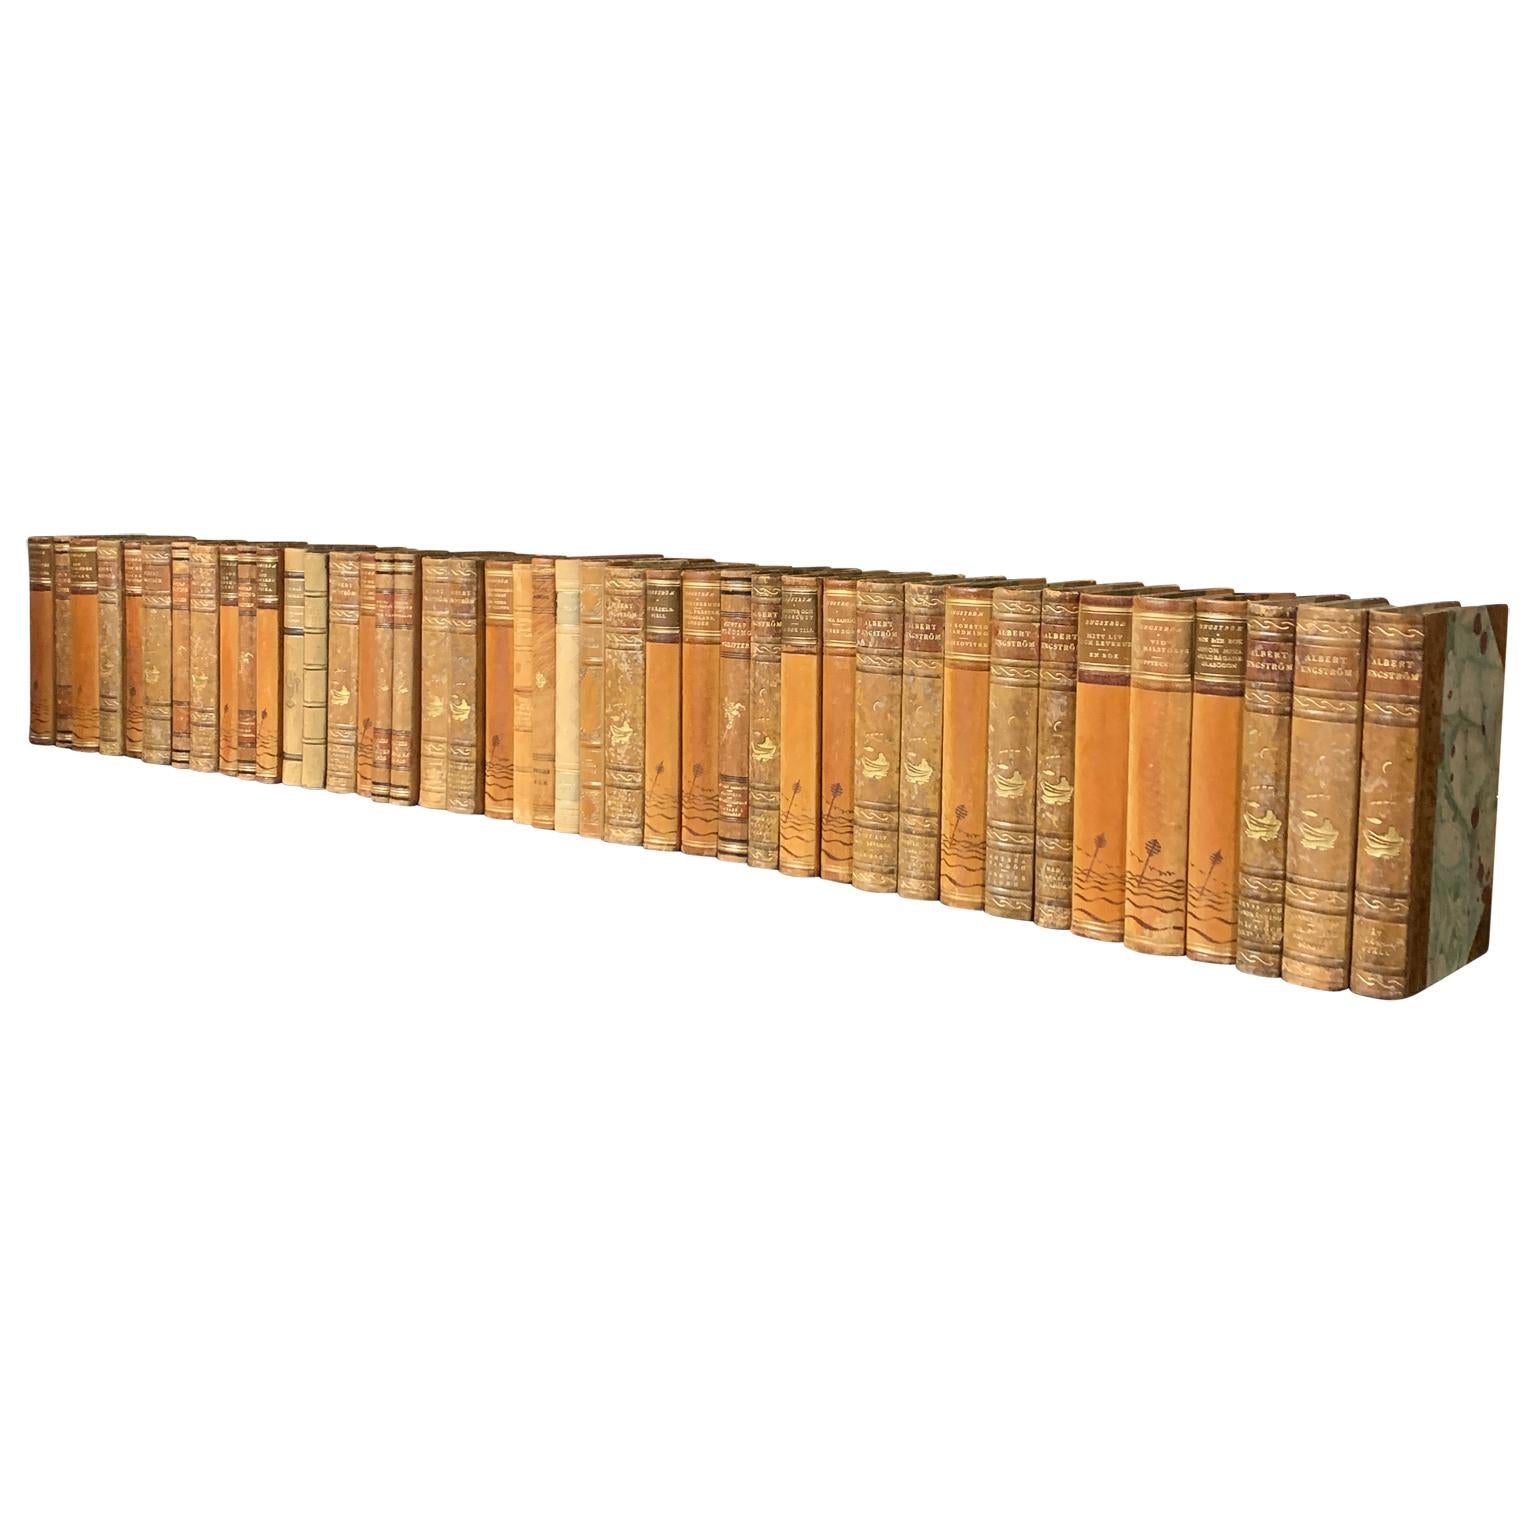 Eine Sammlung von 47 schwedischen dekorativen antiken ledergebundenen Bibliotheksbüchern aus den 1930er-1940er Jahren.
Die Bücher sind in ledergebundene Einbände mit einer Auswahl an warmen Farbtönen und Blattgoldprägung gehüllt.
Die